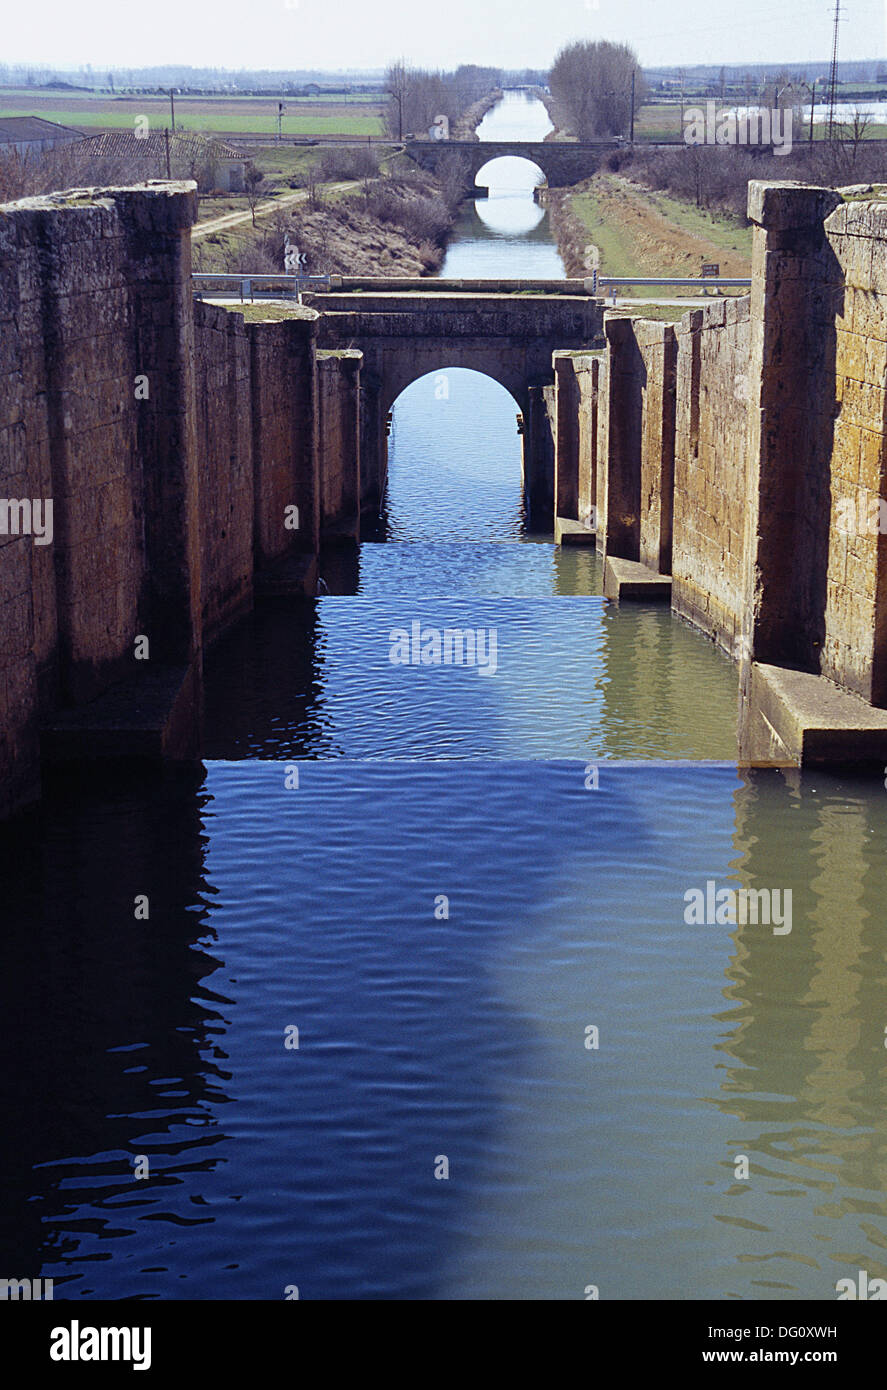 Locks in the Canal de Castilla, Fromista, Palencia province, Castilla-Leon, Spain Stock Photo